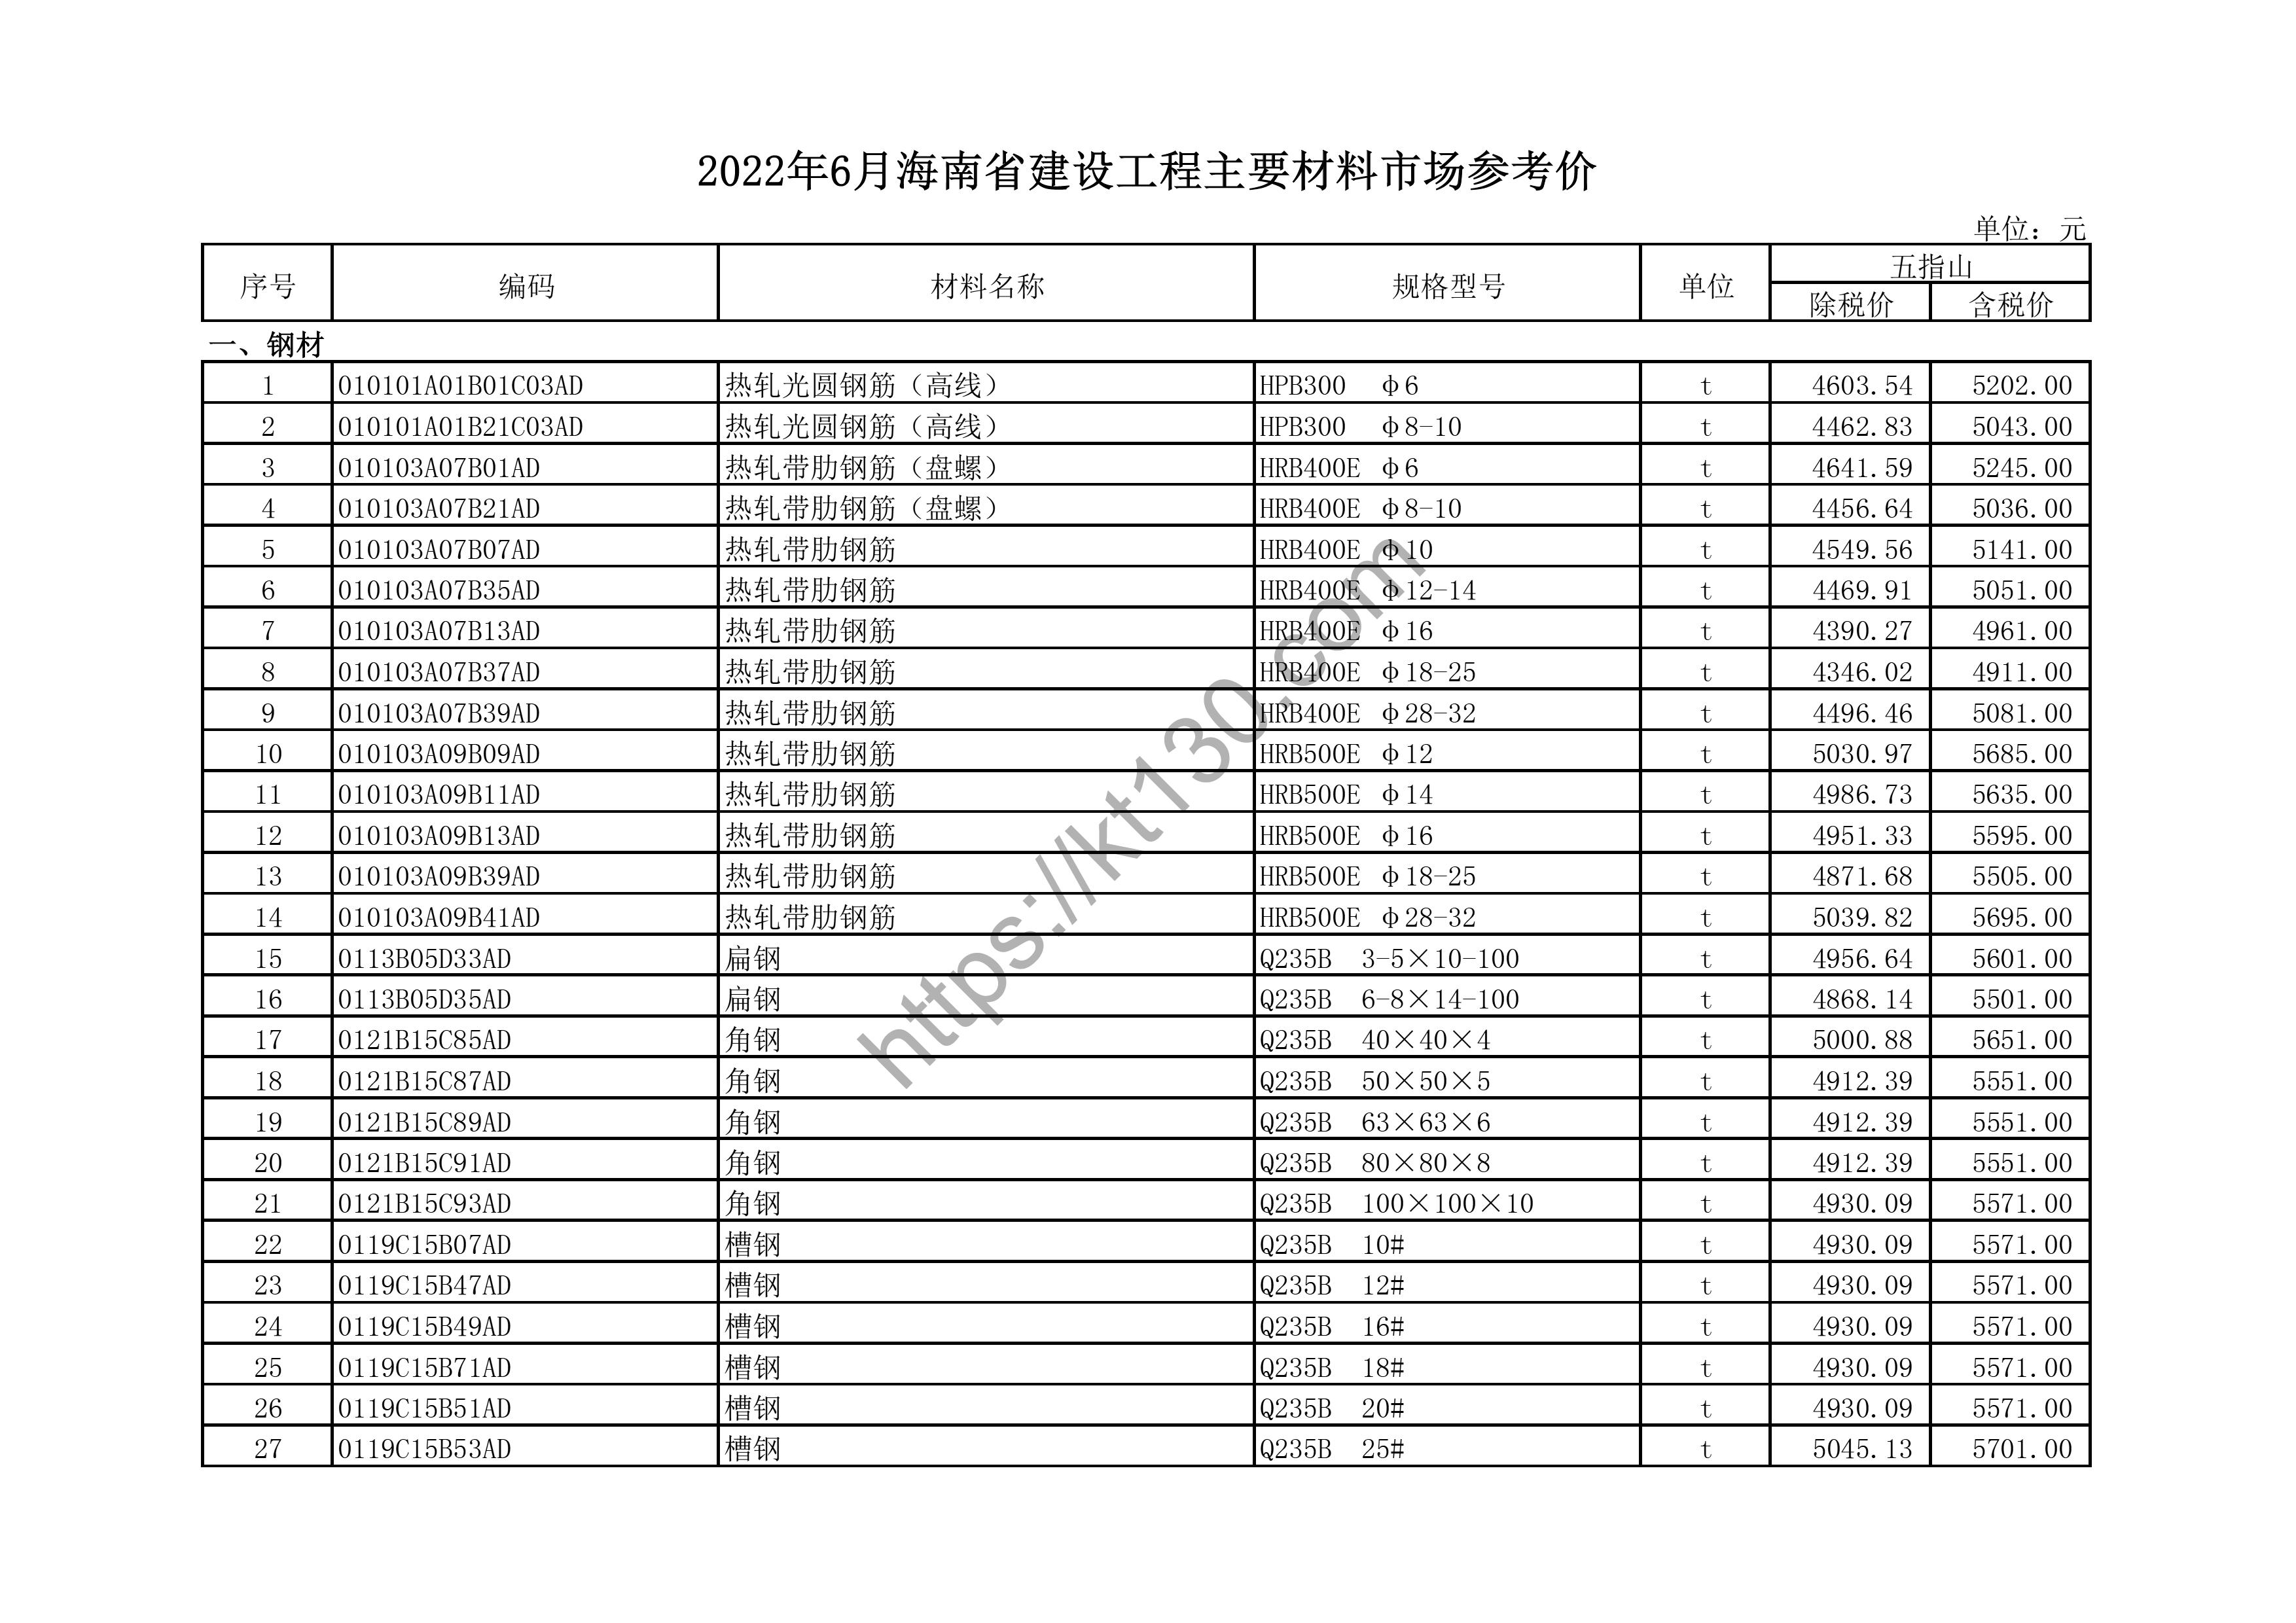 海南省2022年6月建筑材料价_木、竹材料_44546